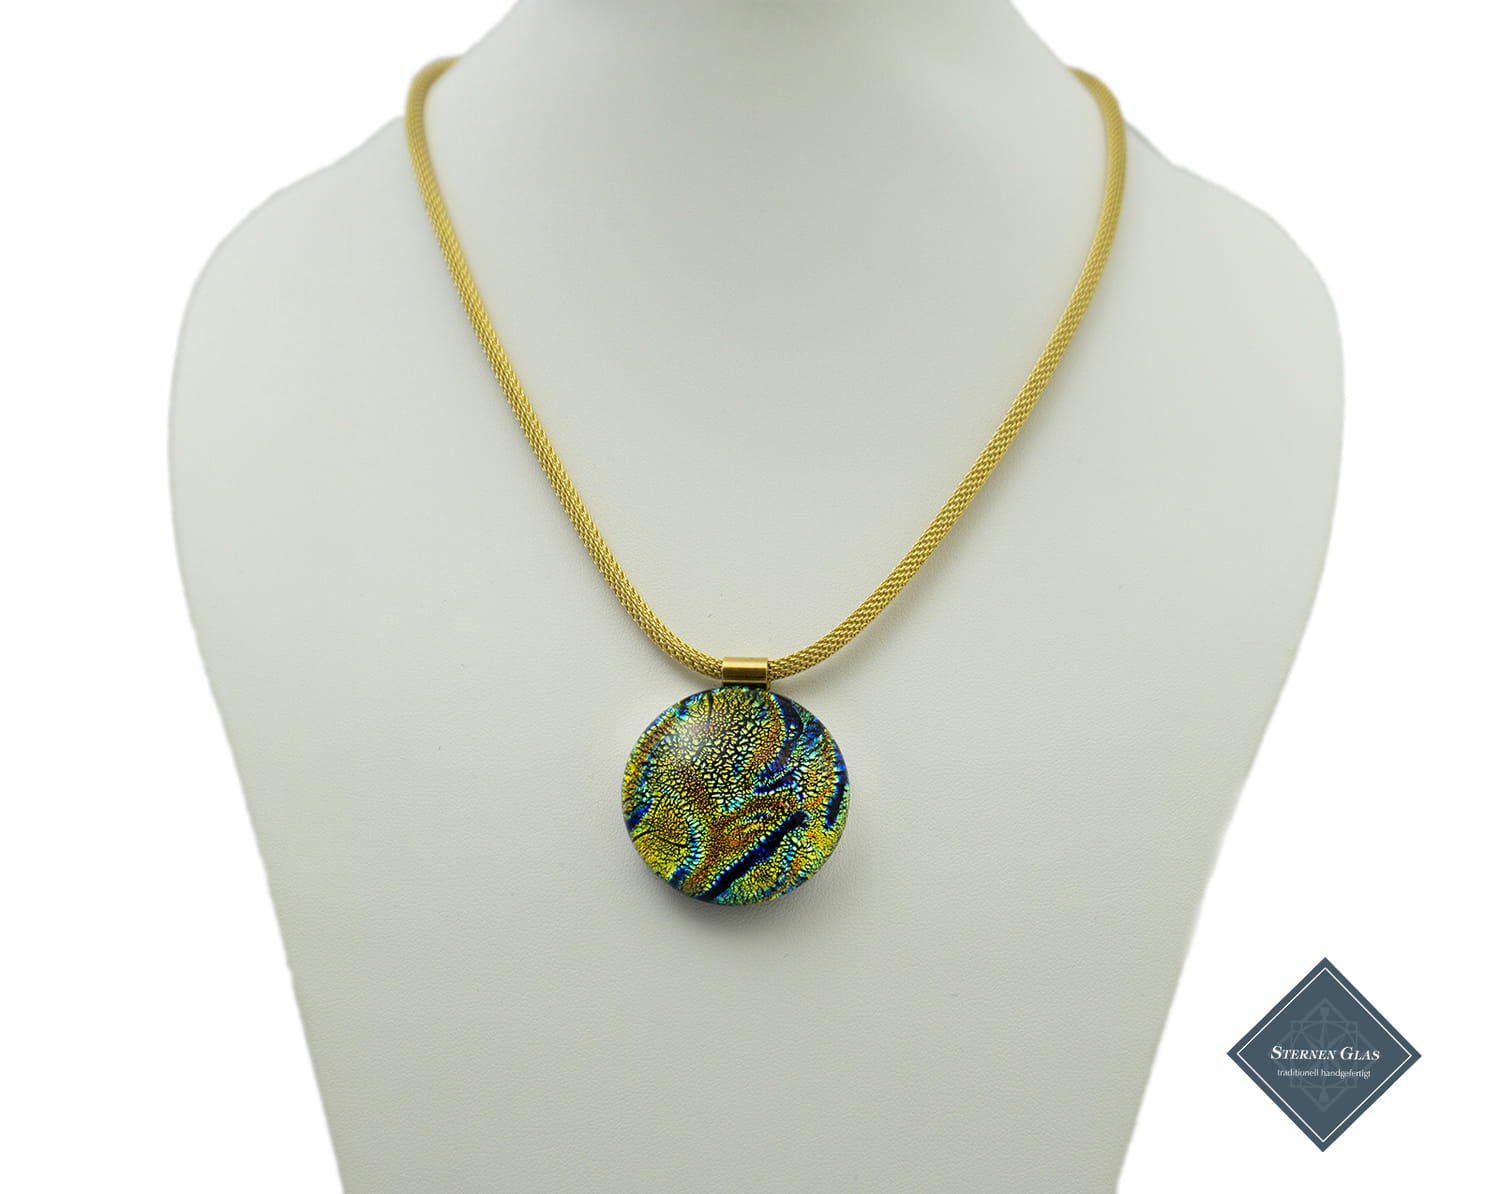 STERNEN GLAS | "Scheherazade" | Necklace Exclusive Edition | Crochet Chain